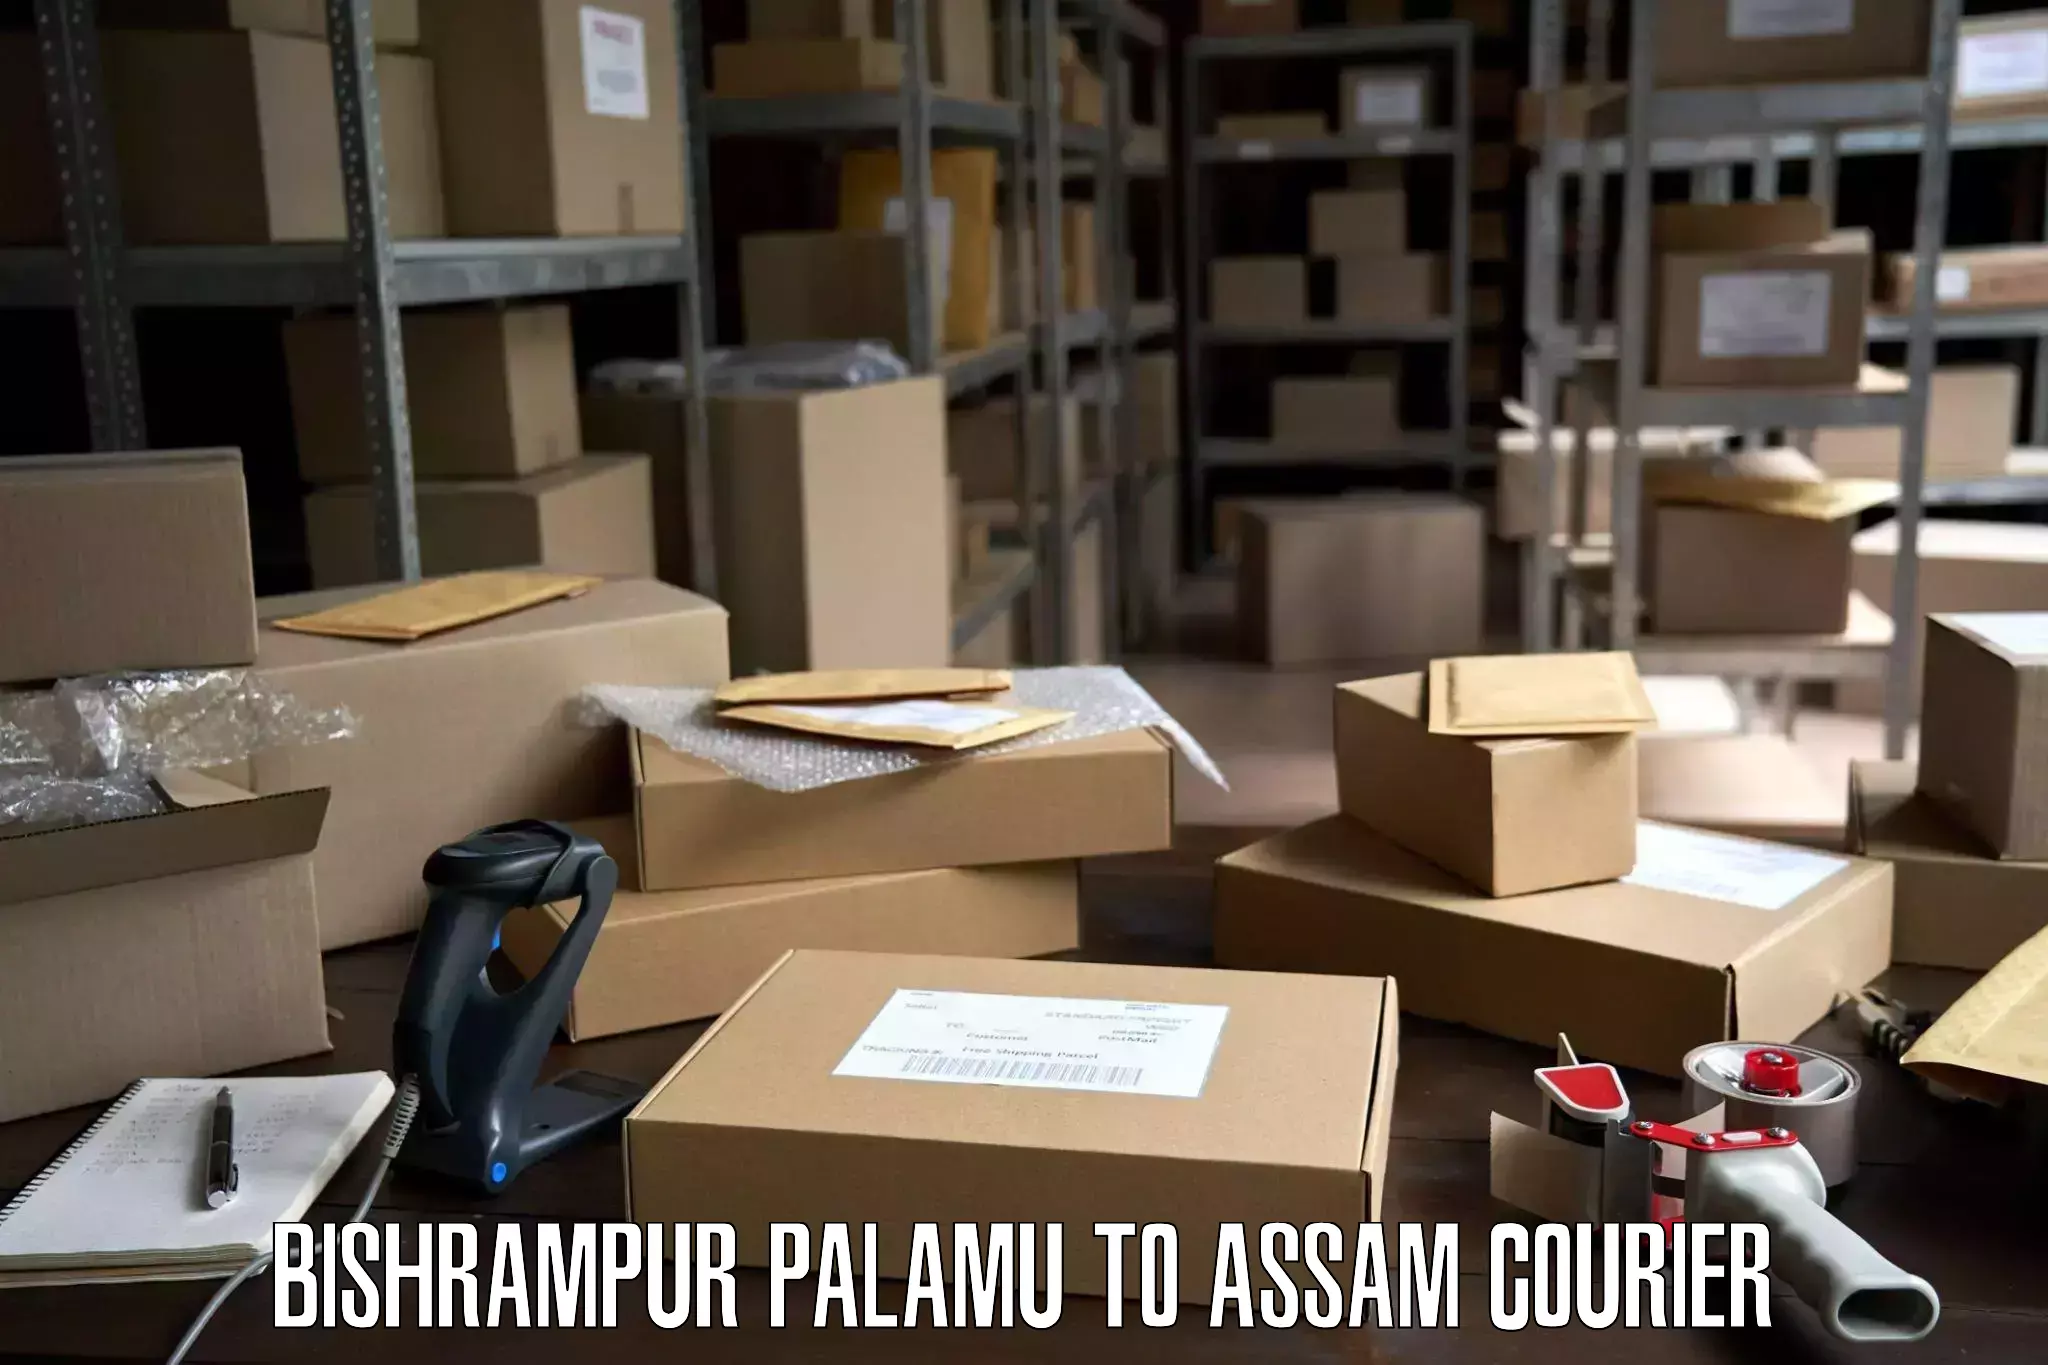 Professional packing services Bishrampur Palamu to Balapara